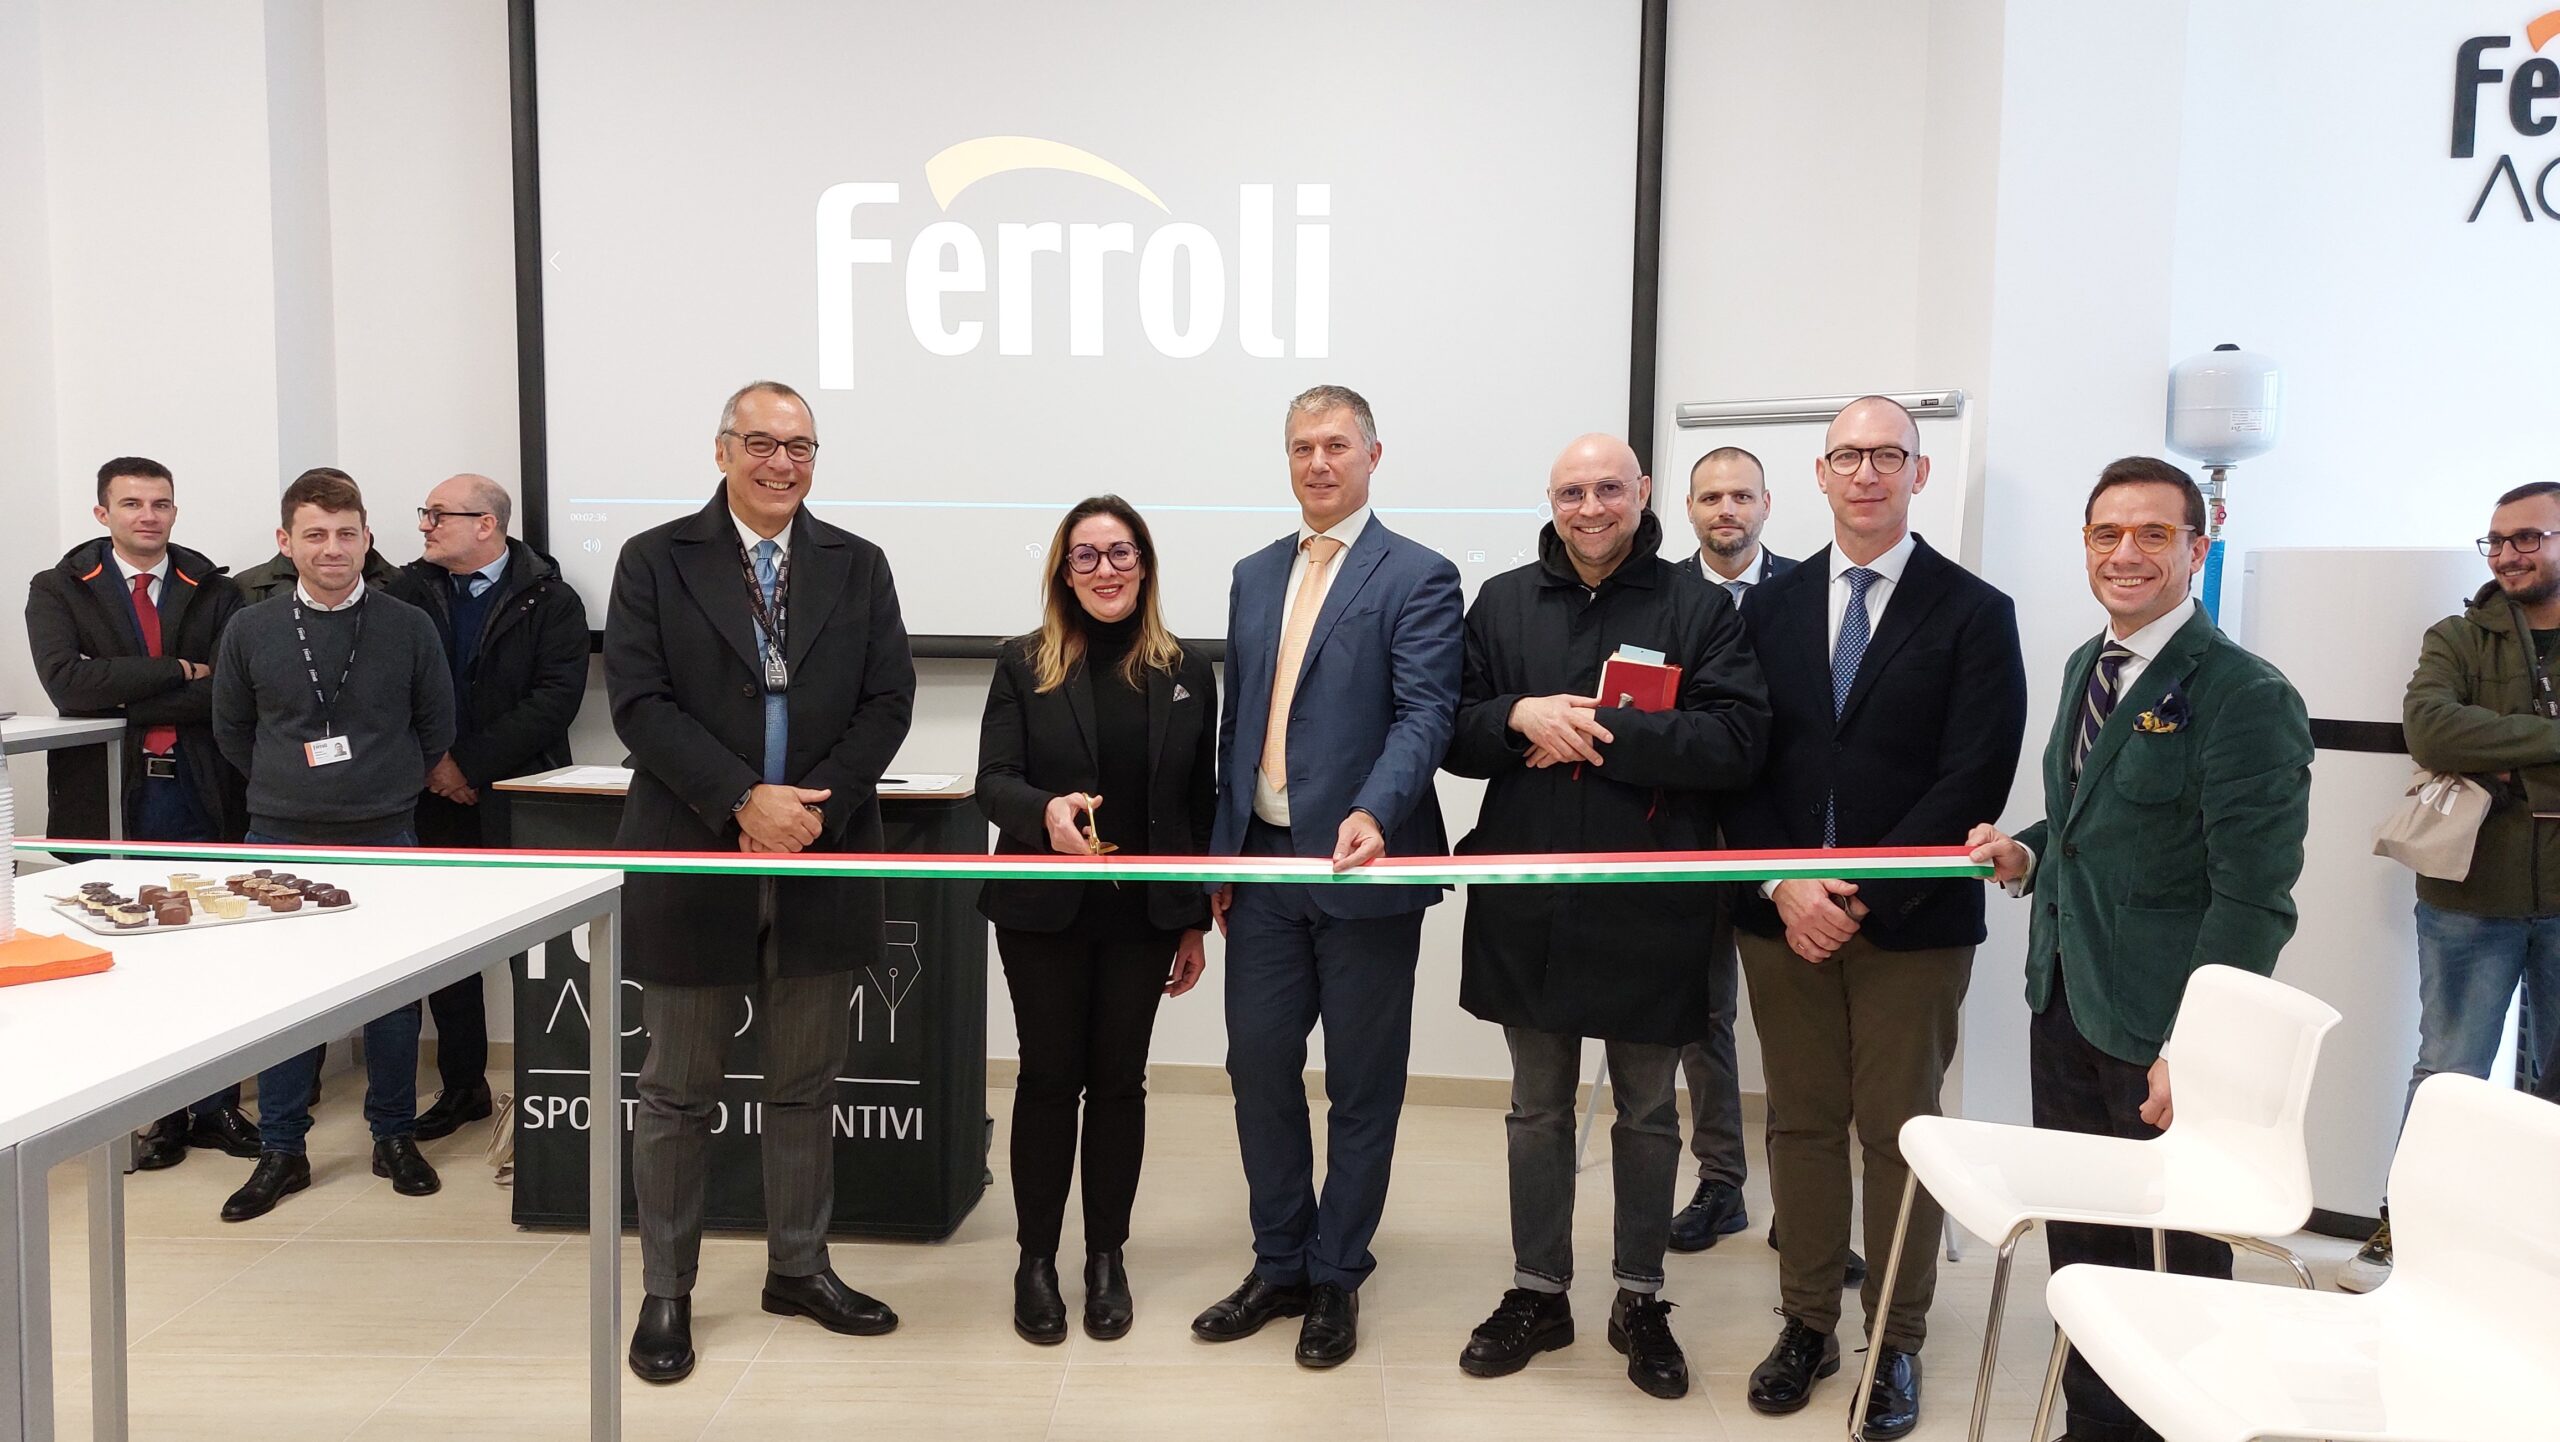 Il Gruppo Ferroli amplia il progetto Academy a Molfetta, potenziando le attività formative nel Sud